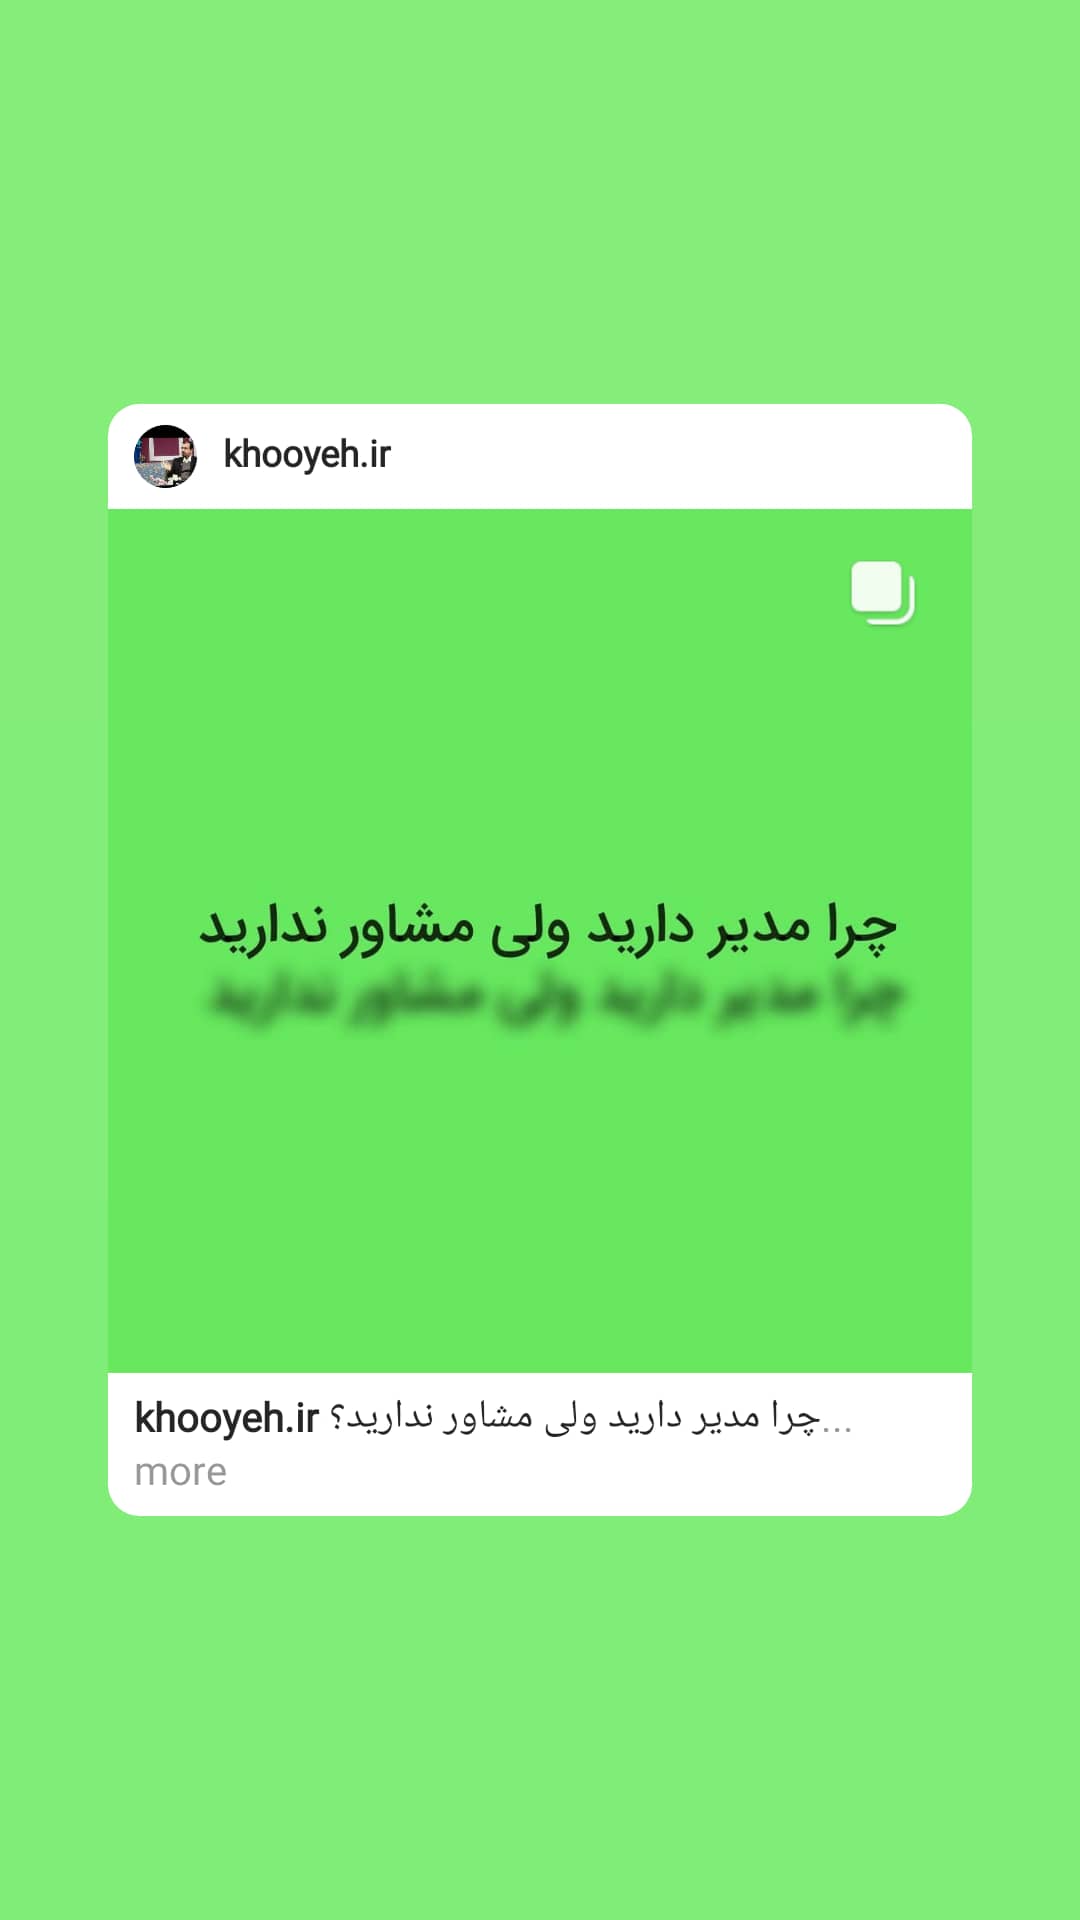 علی خویه مشاور مربی کوچ ومنتور کسب و کار مدیریت فروش بازاریابی برند khooyeh.ir